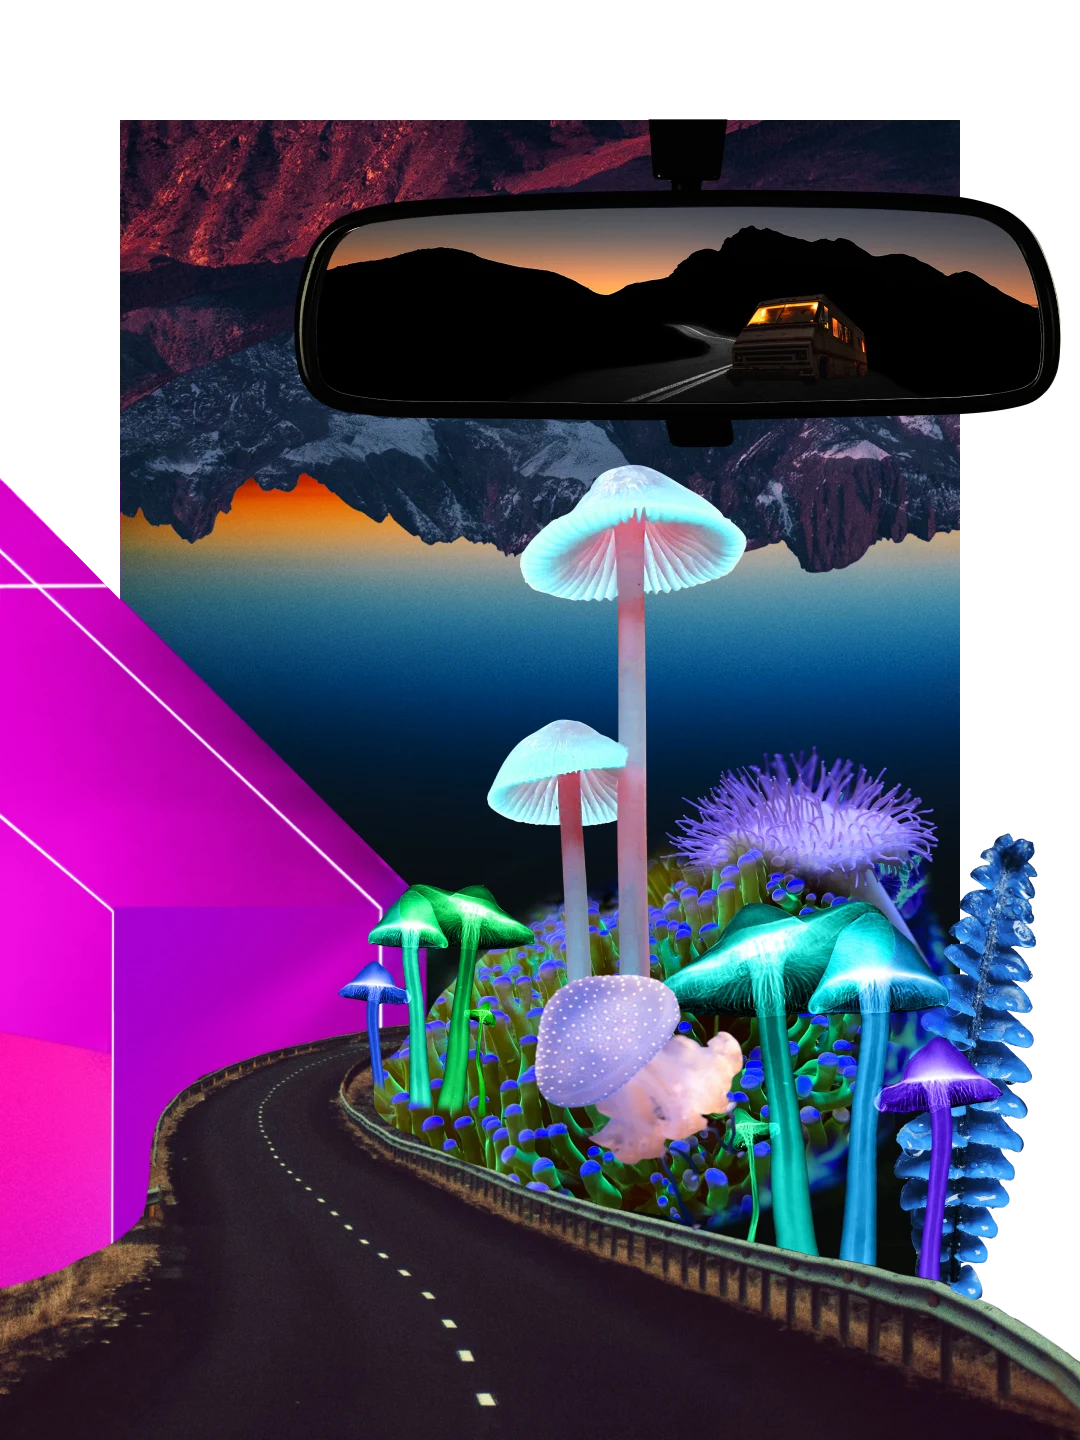 Collage di immagini dai colori accesi relative alla notte. A sinistra, una forma geometrica rosa fosforescente, con formazioni montuose scure e grandi disegni di funghi luminosi in primo piano. In alto, uno specchietto retrovisore su cui si riflette una monovolume, una strada e le montagne al tramonto.
